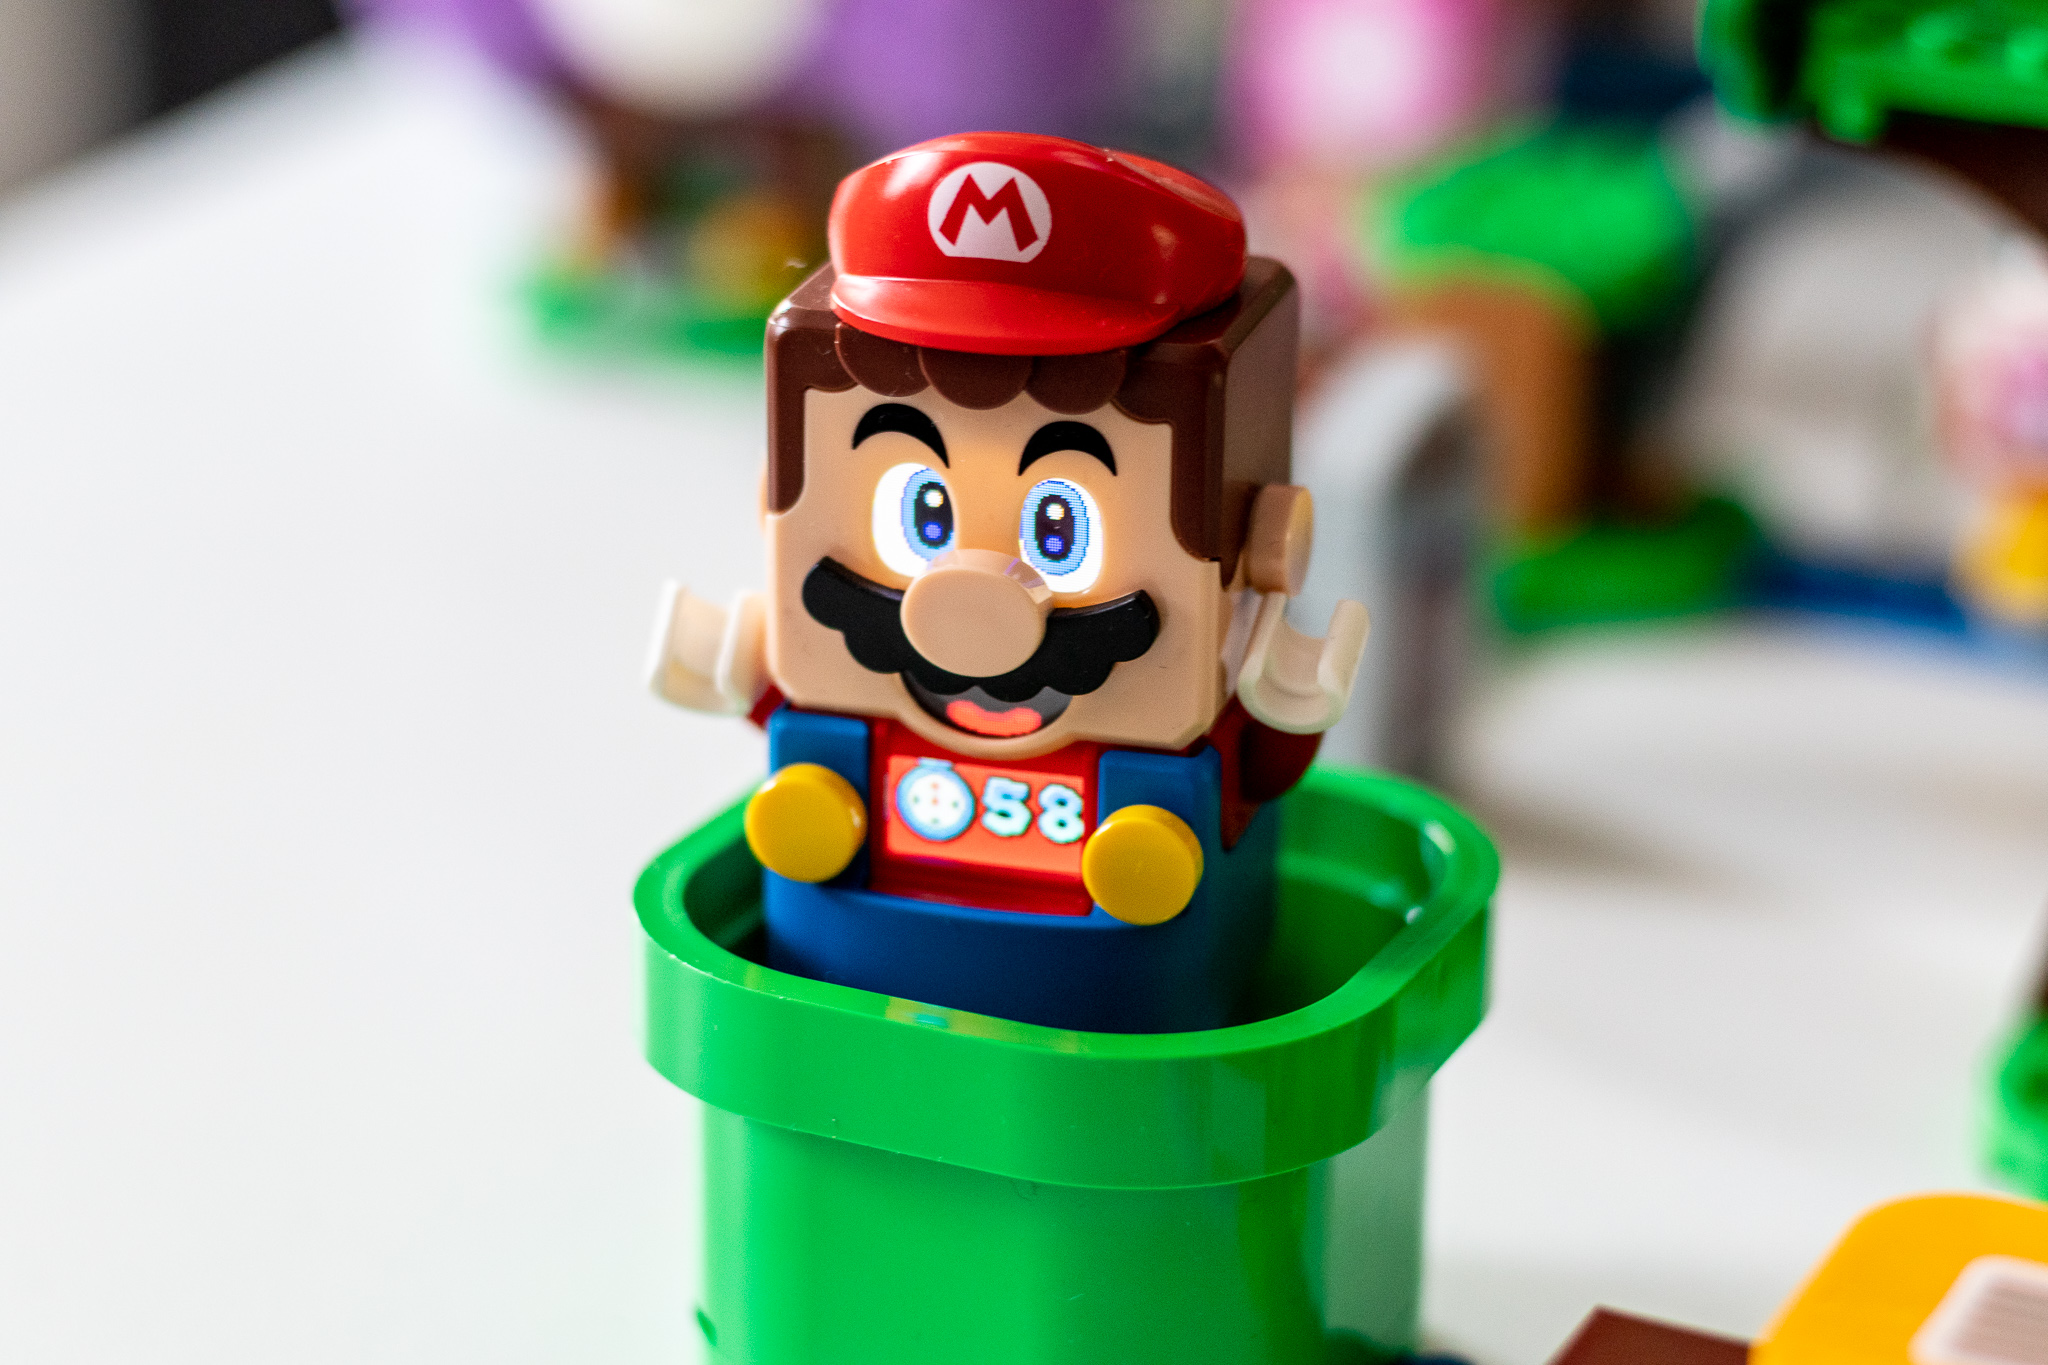 LEGO Super Mario daukat jada. Plastikozko iturgintza uste baino azkarragoa da eta blokeek denbora luzez dibertitzen zaituzte